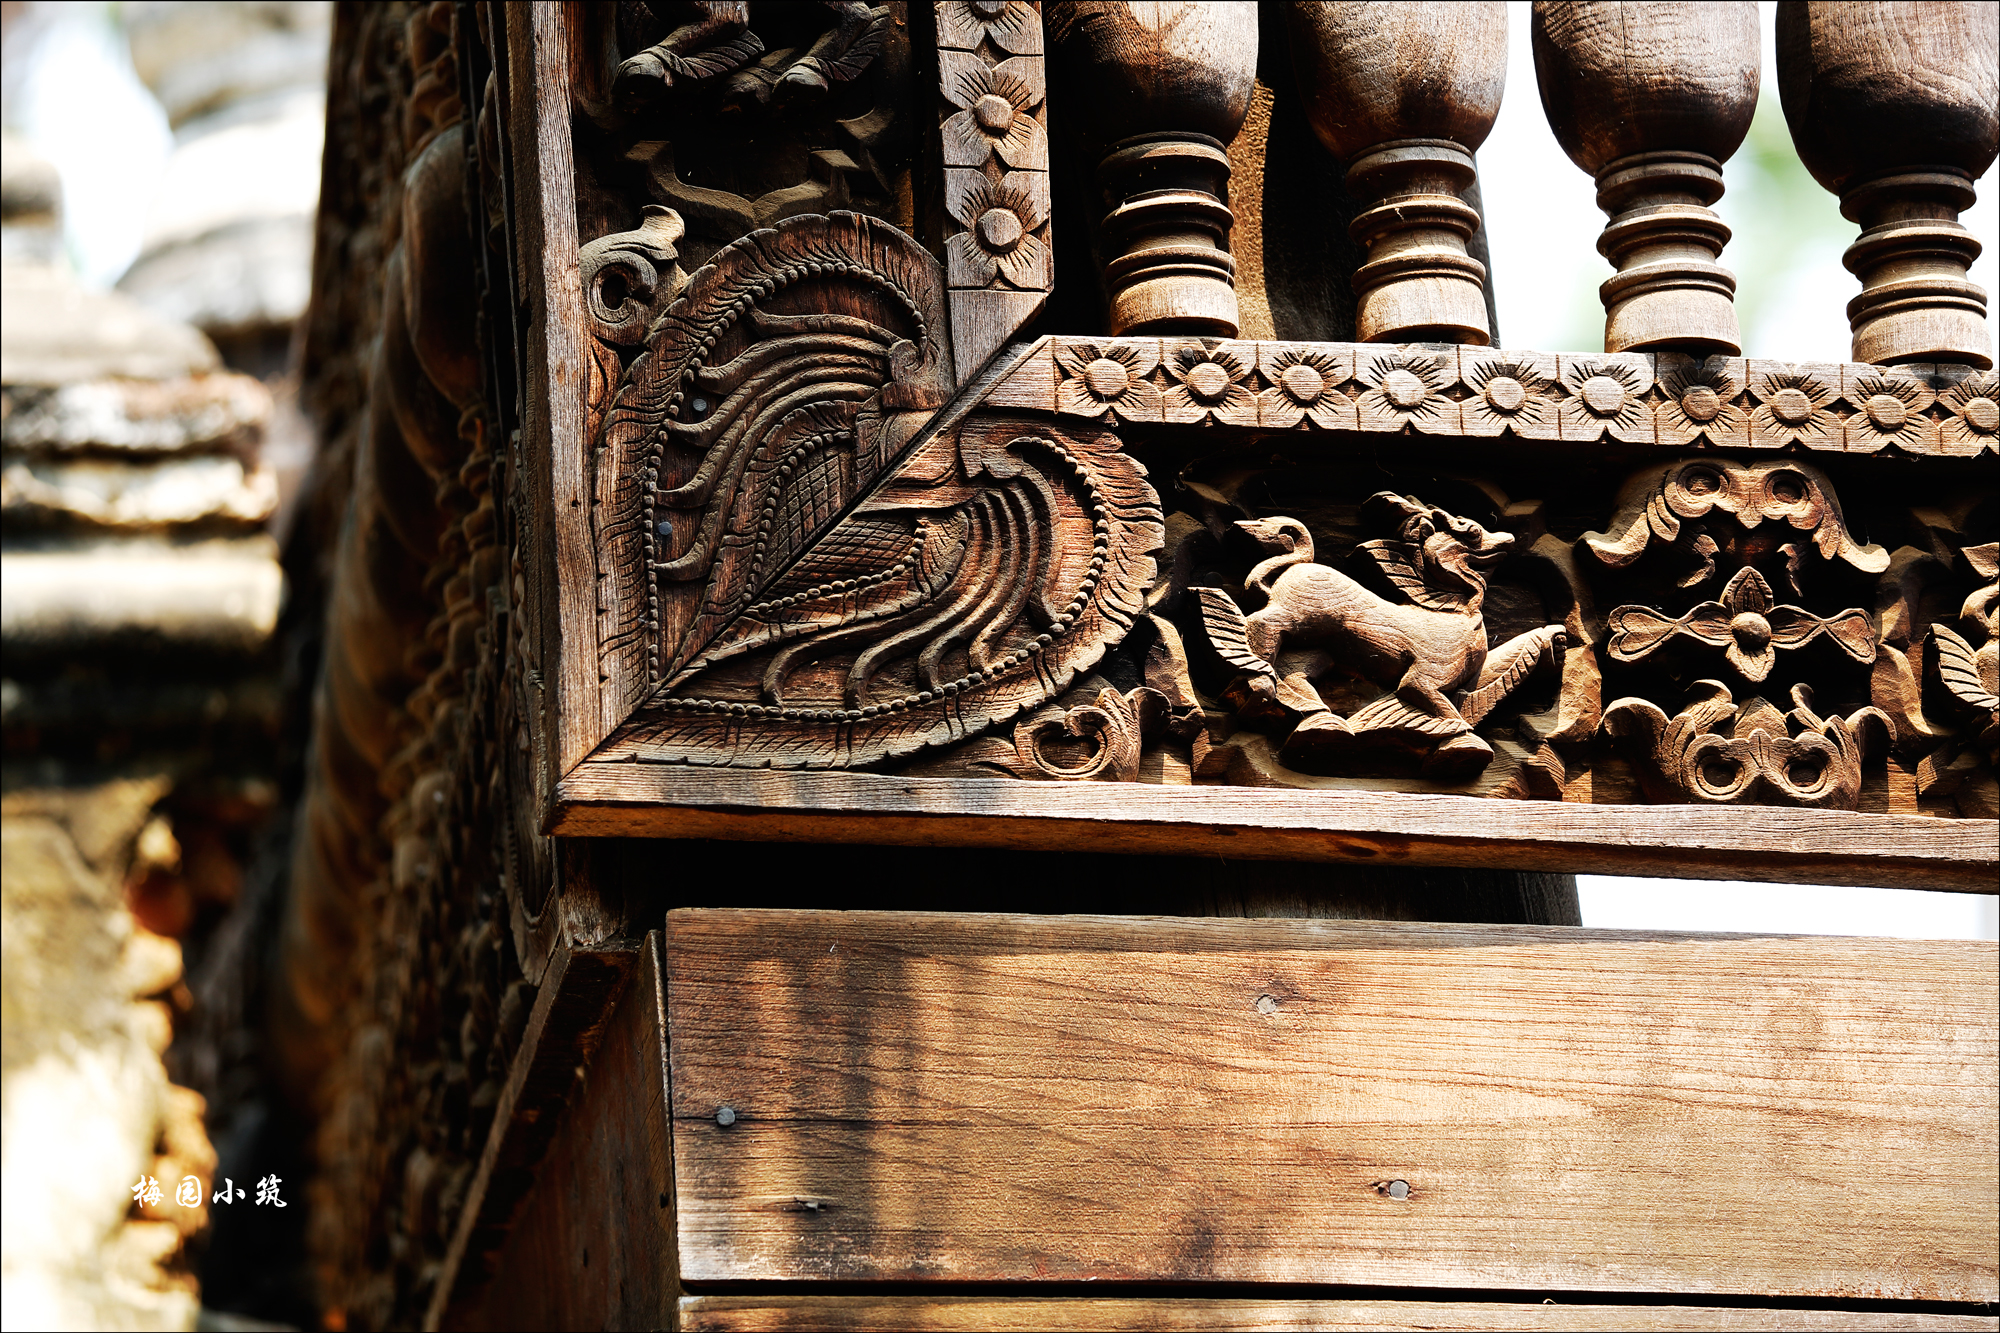 【携程攻略】曼德勒马哈昂美寺景点,在因瓦古城内游览的最后一个景点是马哈昂美寺，据说是十九世纪一位皇…